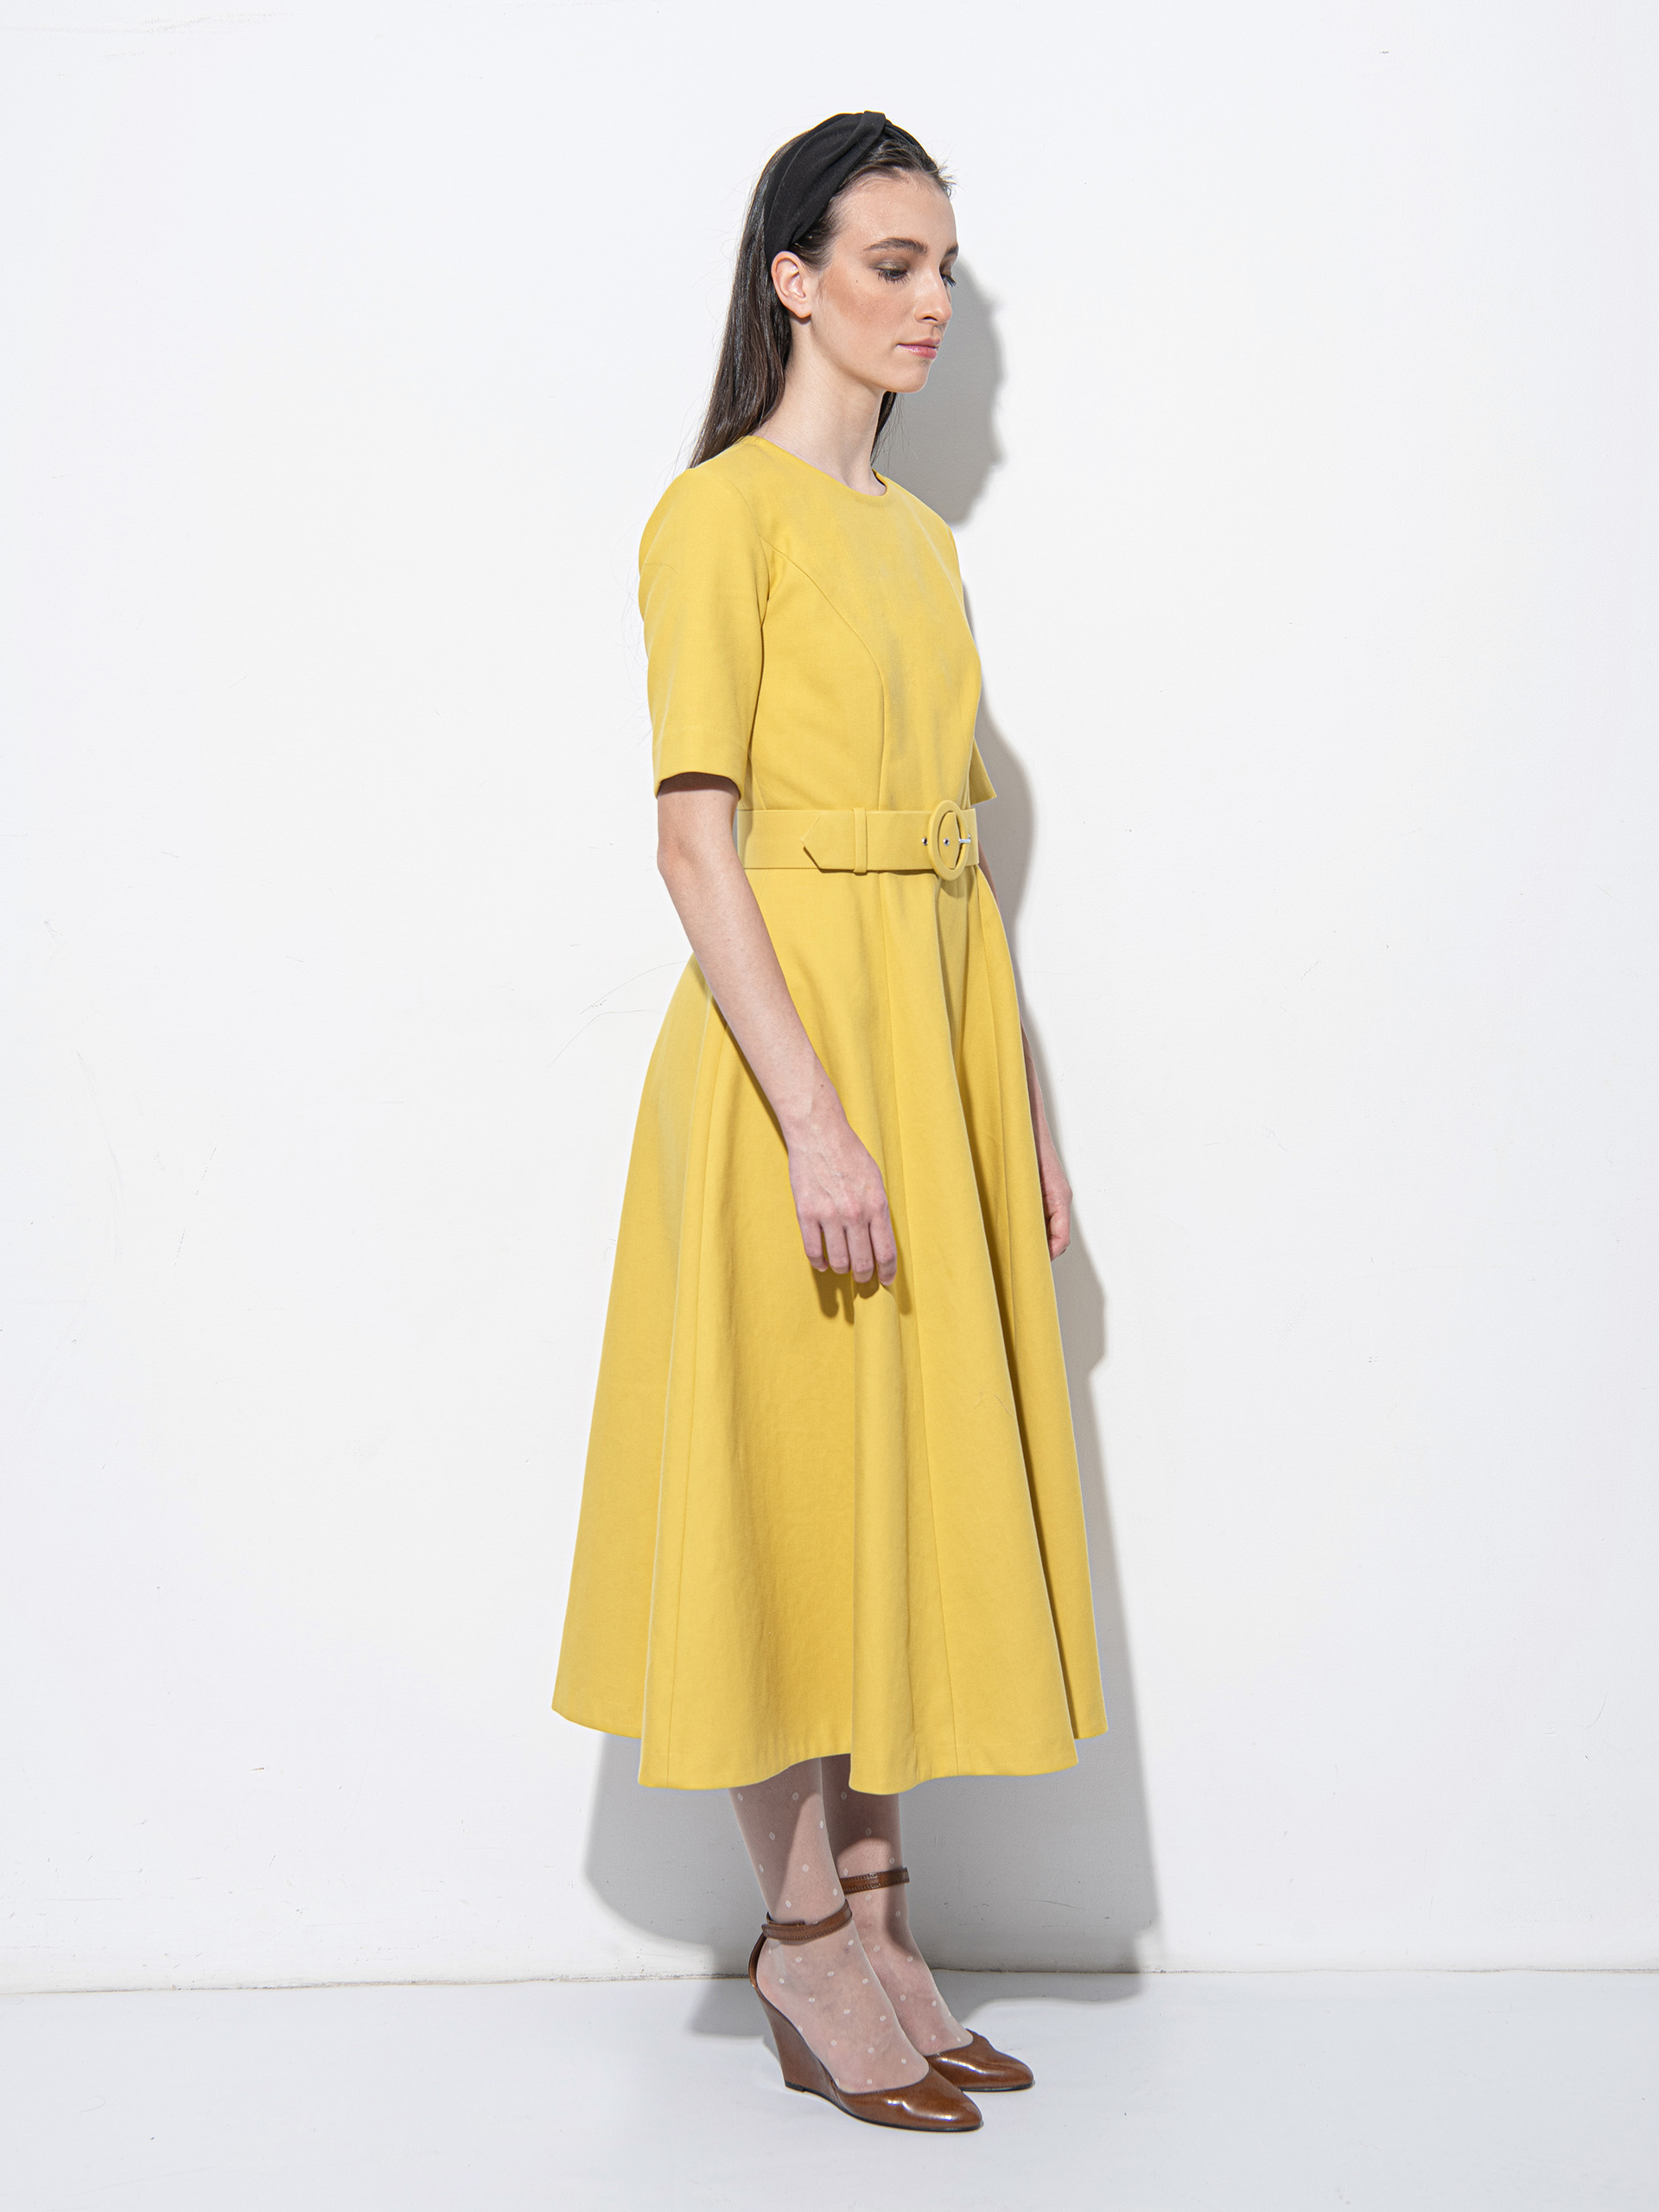 Mustard yellow dress with a belt side • Sassa Björg